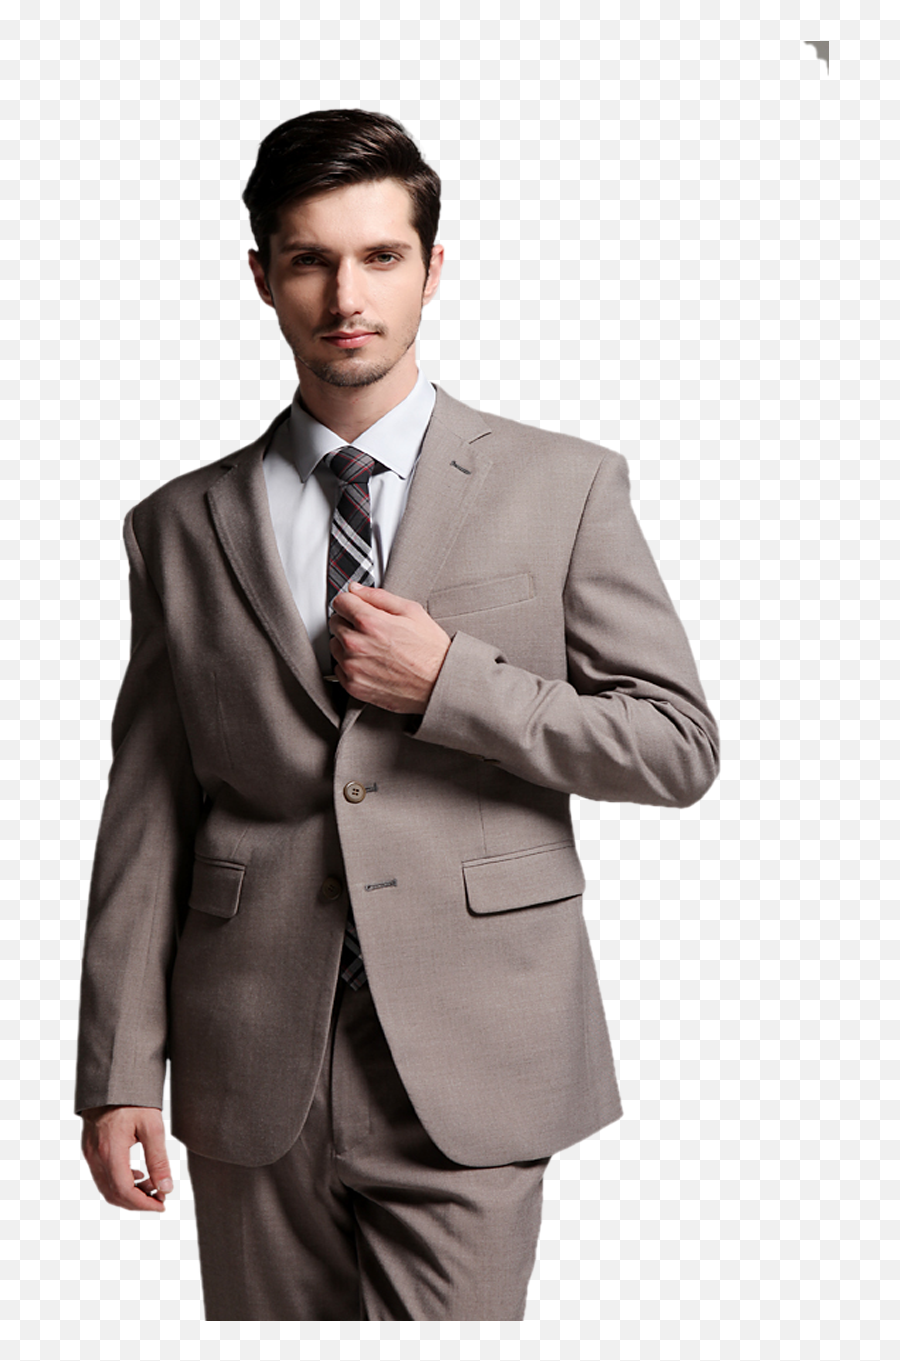 Suit Png Images Free Download - Man Coat Pant Png,Suit Transparent Background